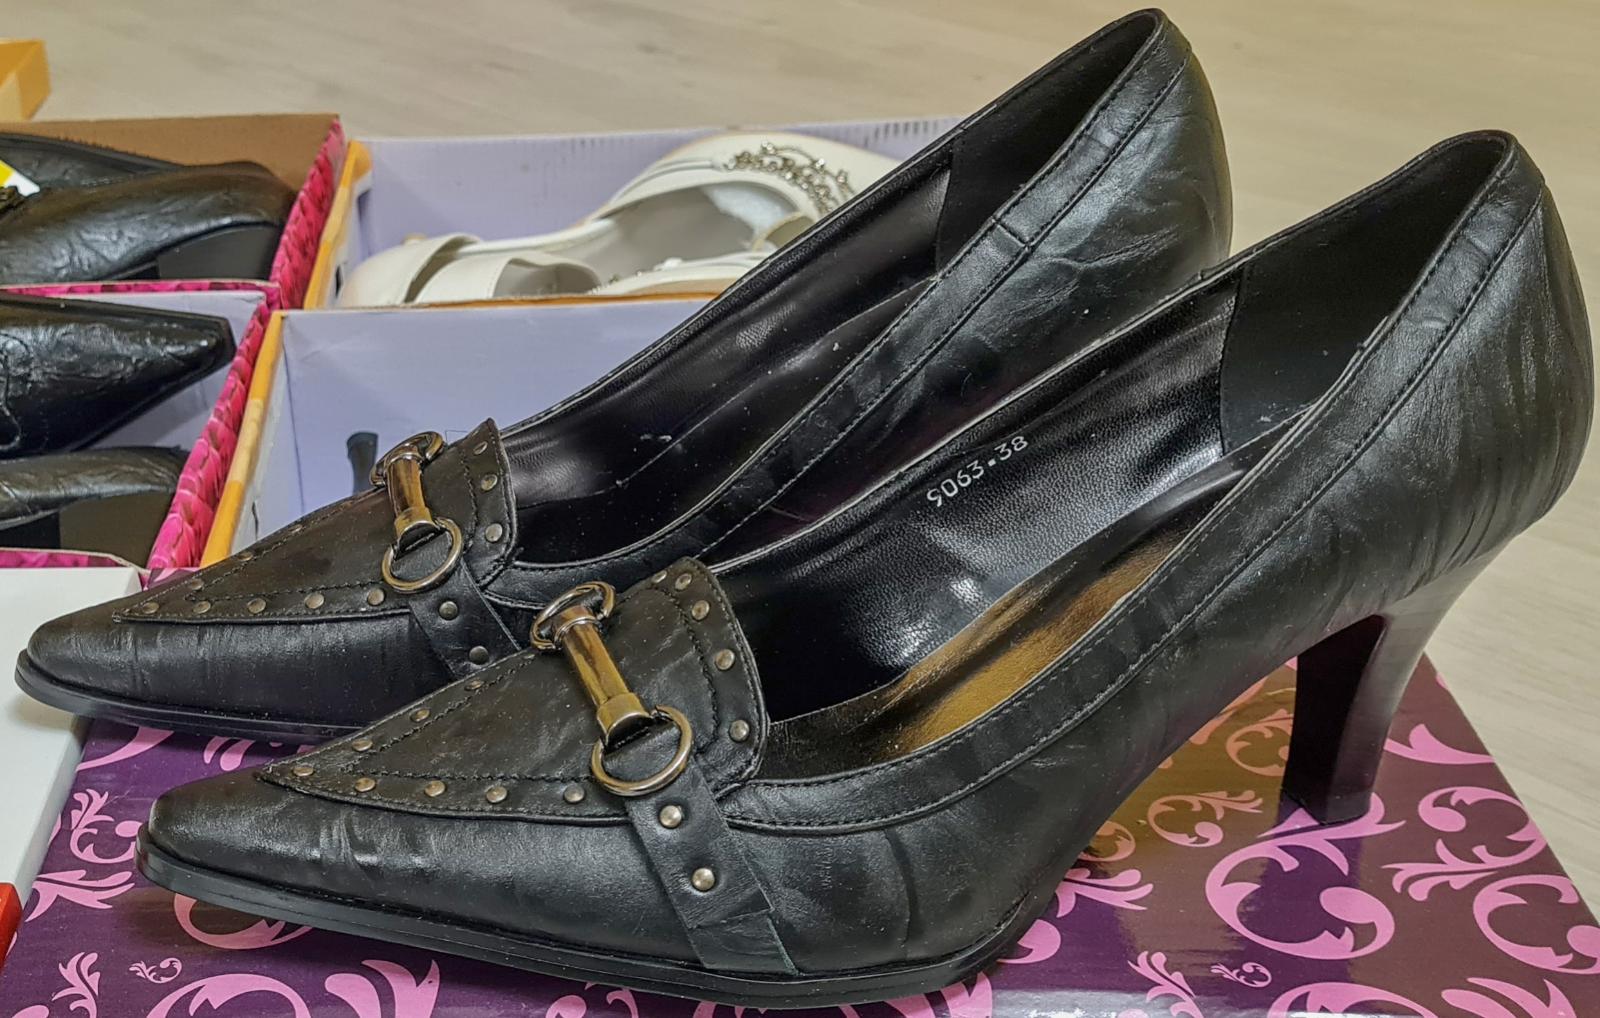 Dámská obuv Koka a Bao Bao, SADA 6 párů, v. 36 cena je za CELOU SADU ! - Dámské boty